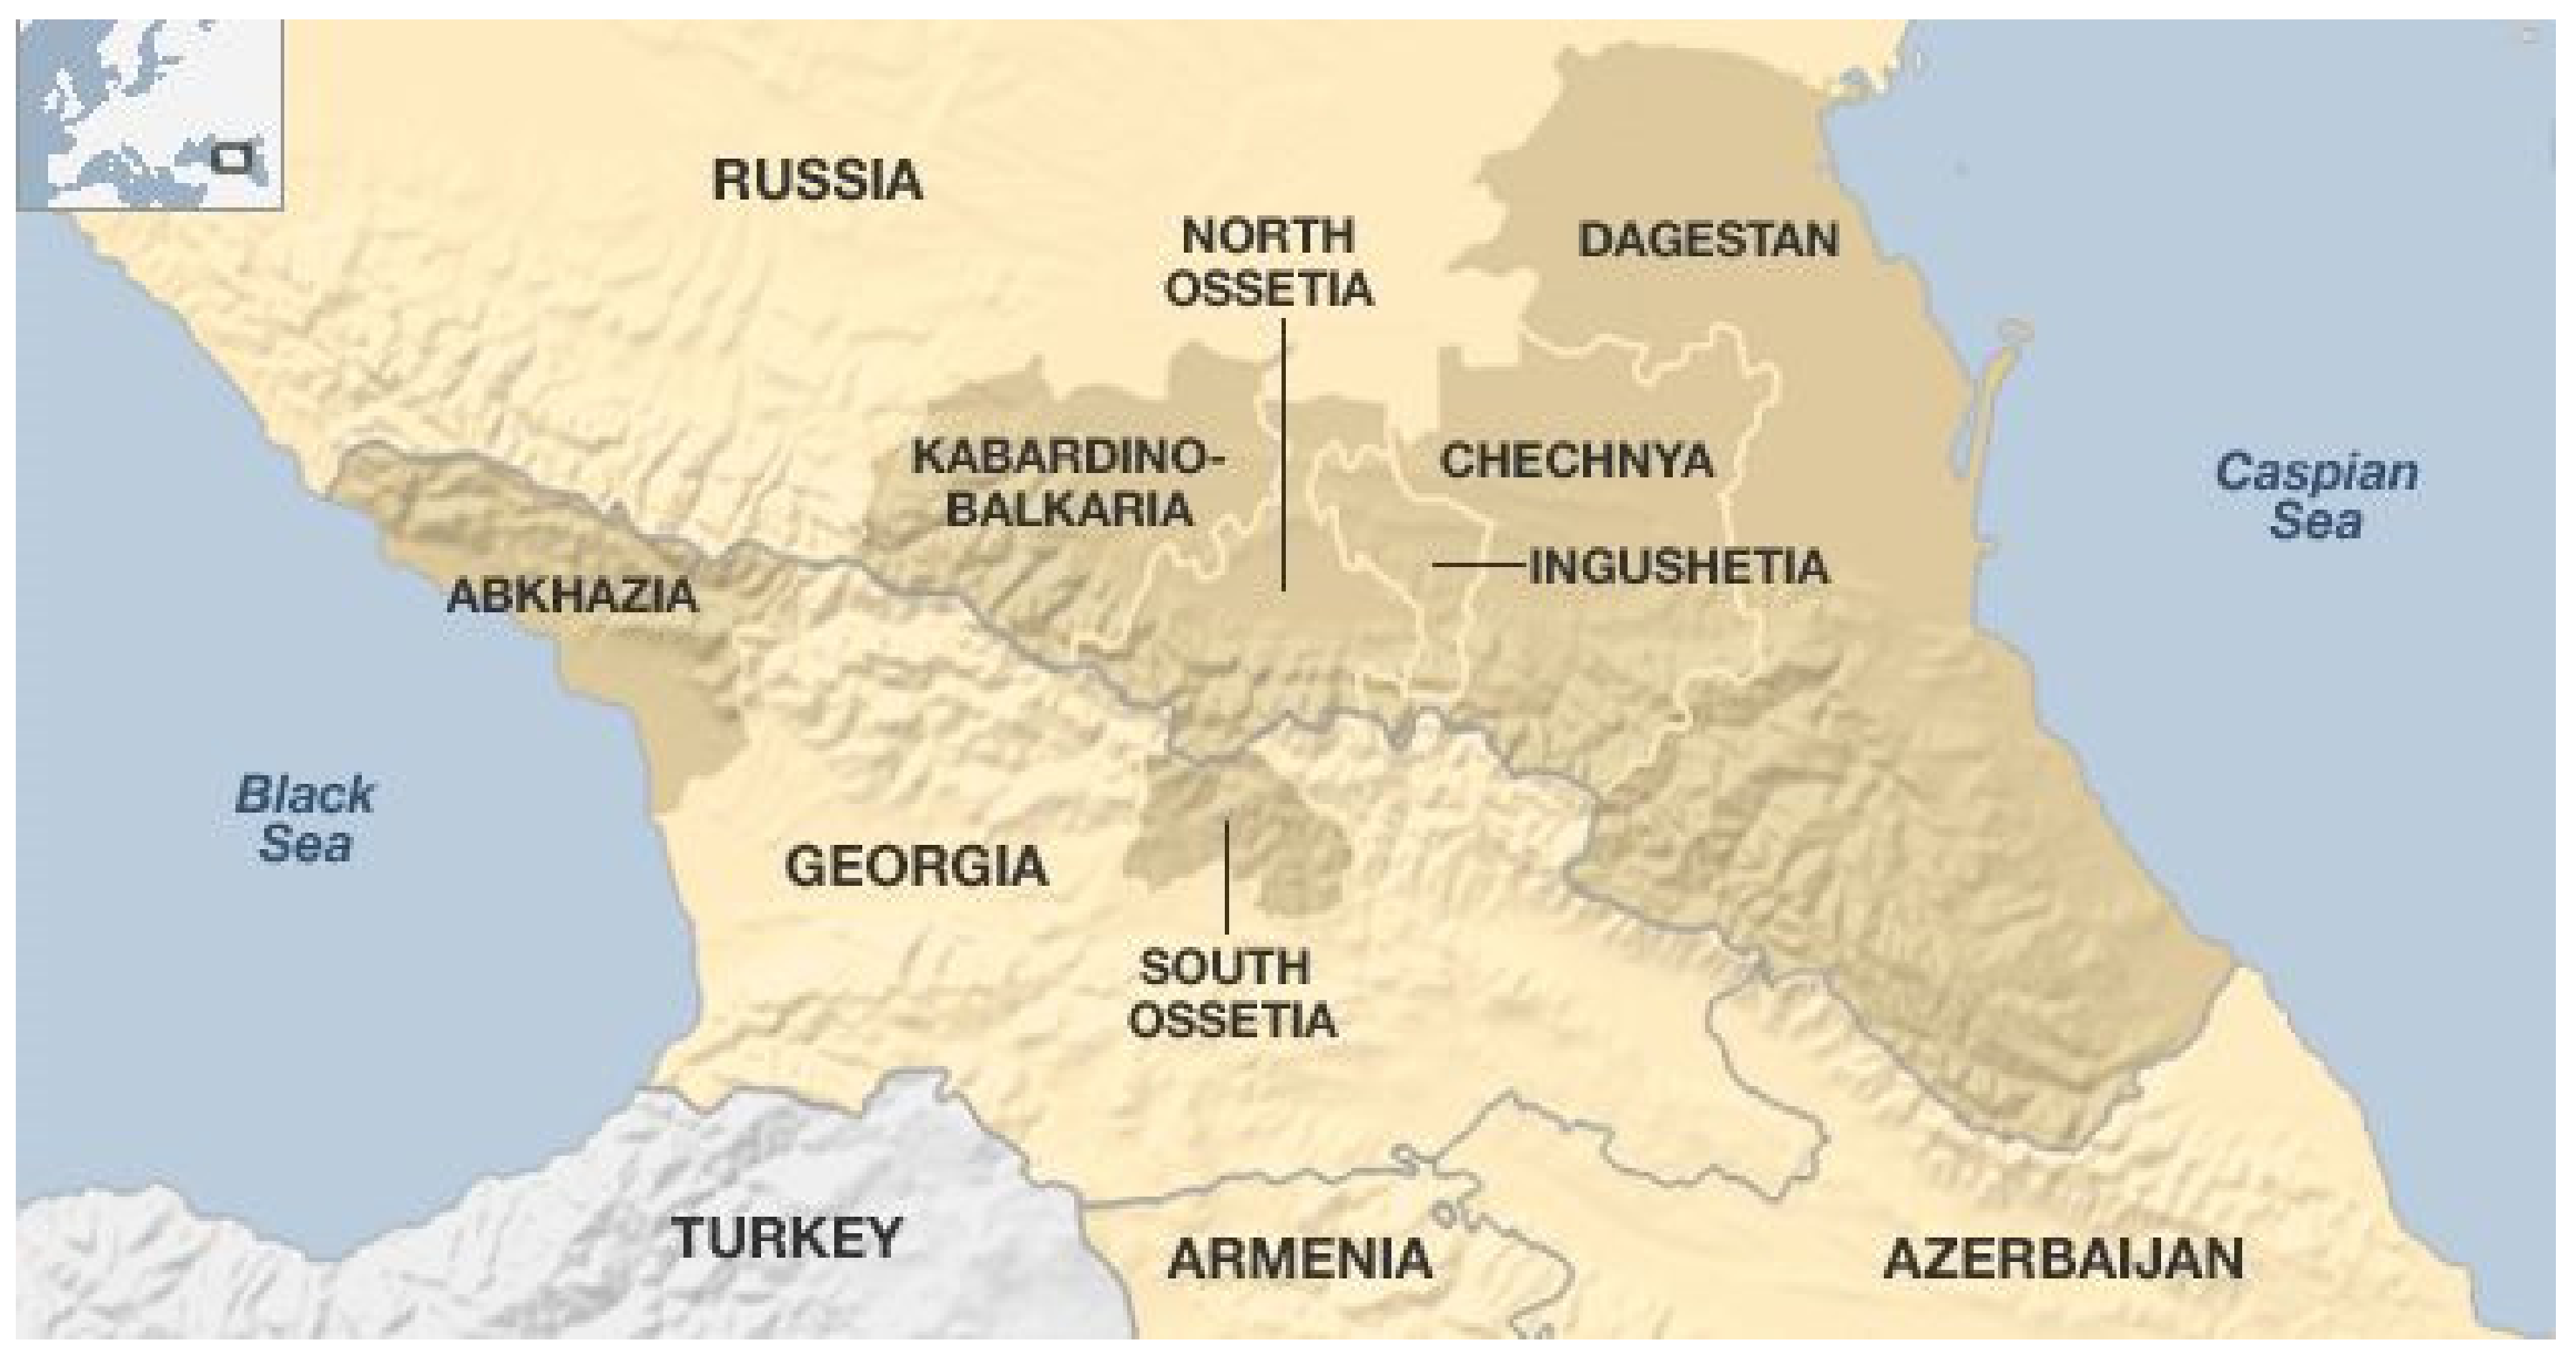 Чечня политическая карта